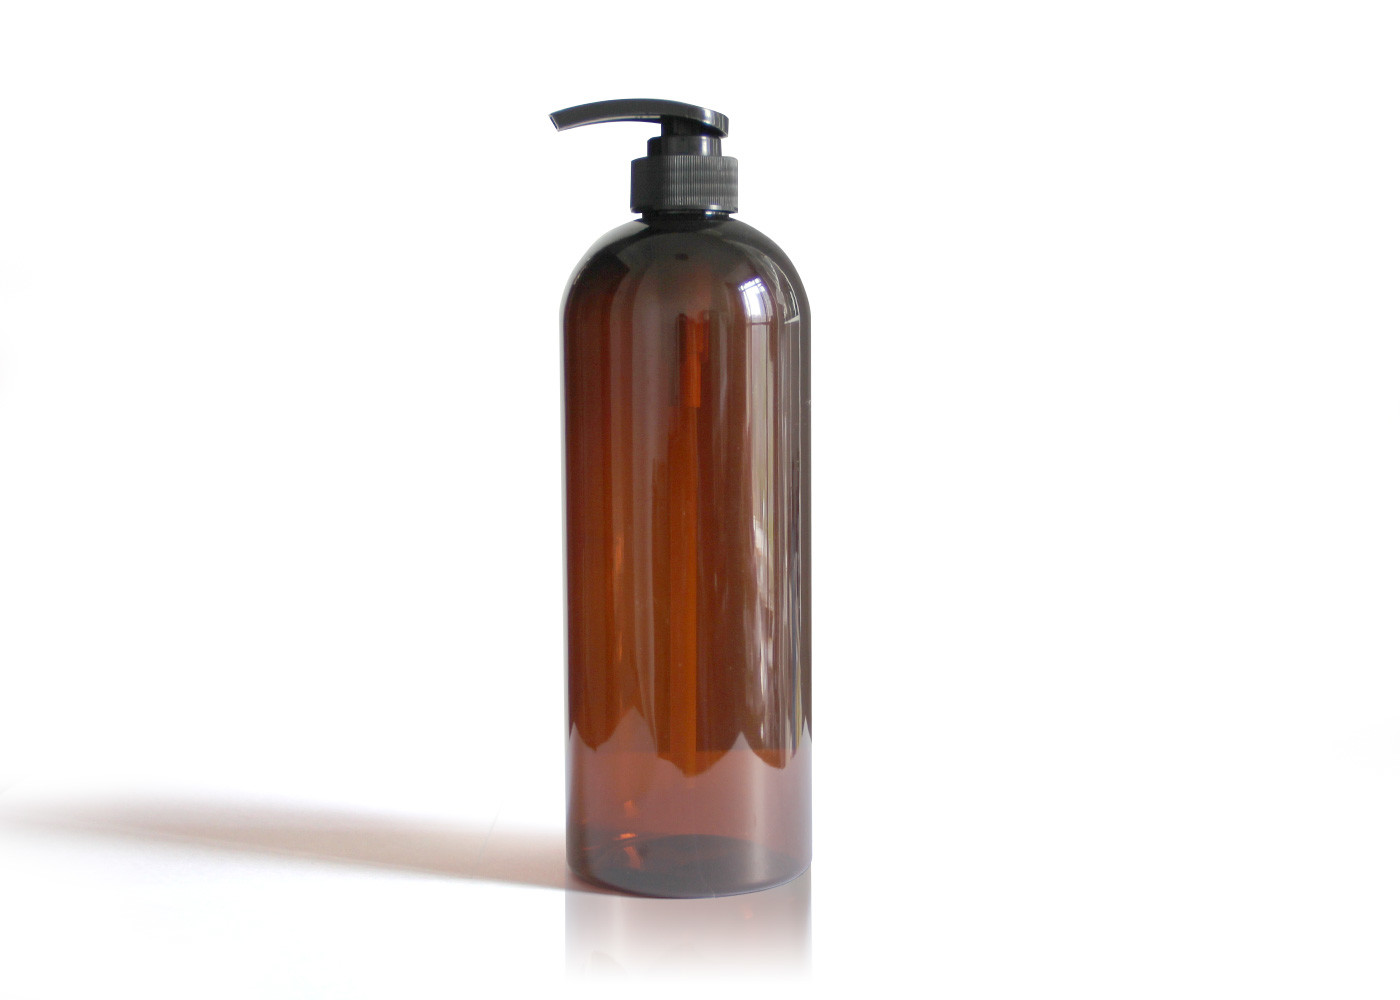  Shampoo Amber PET Cosmetic Bottles Boston Round Shape Customized Manufactures